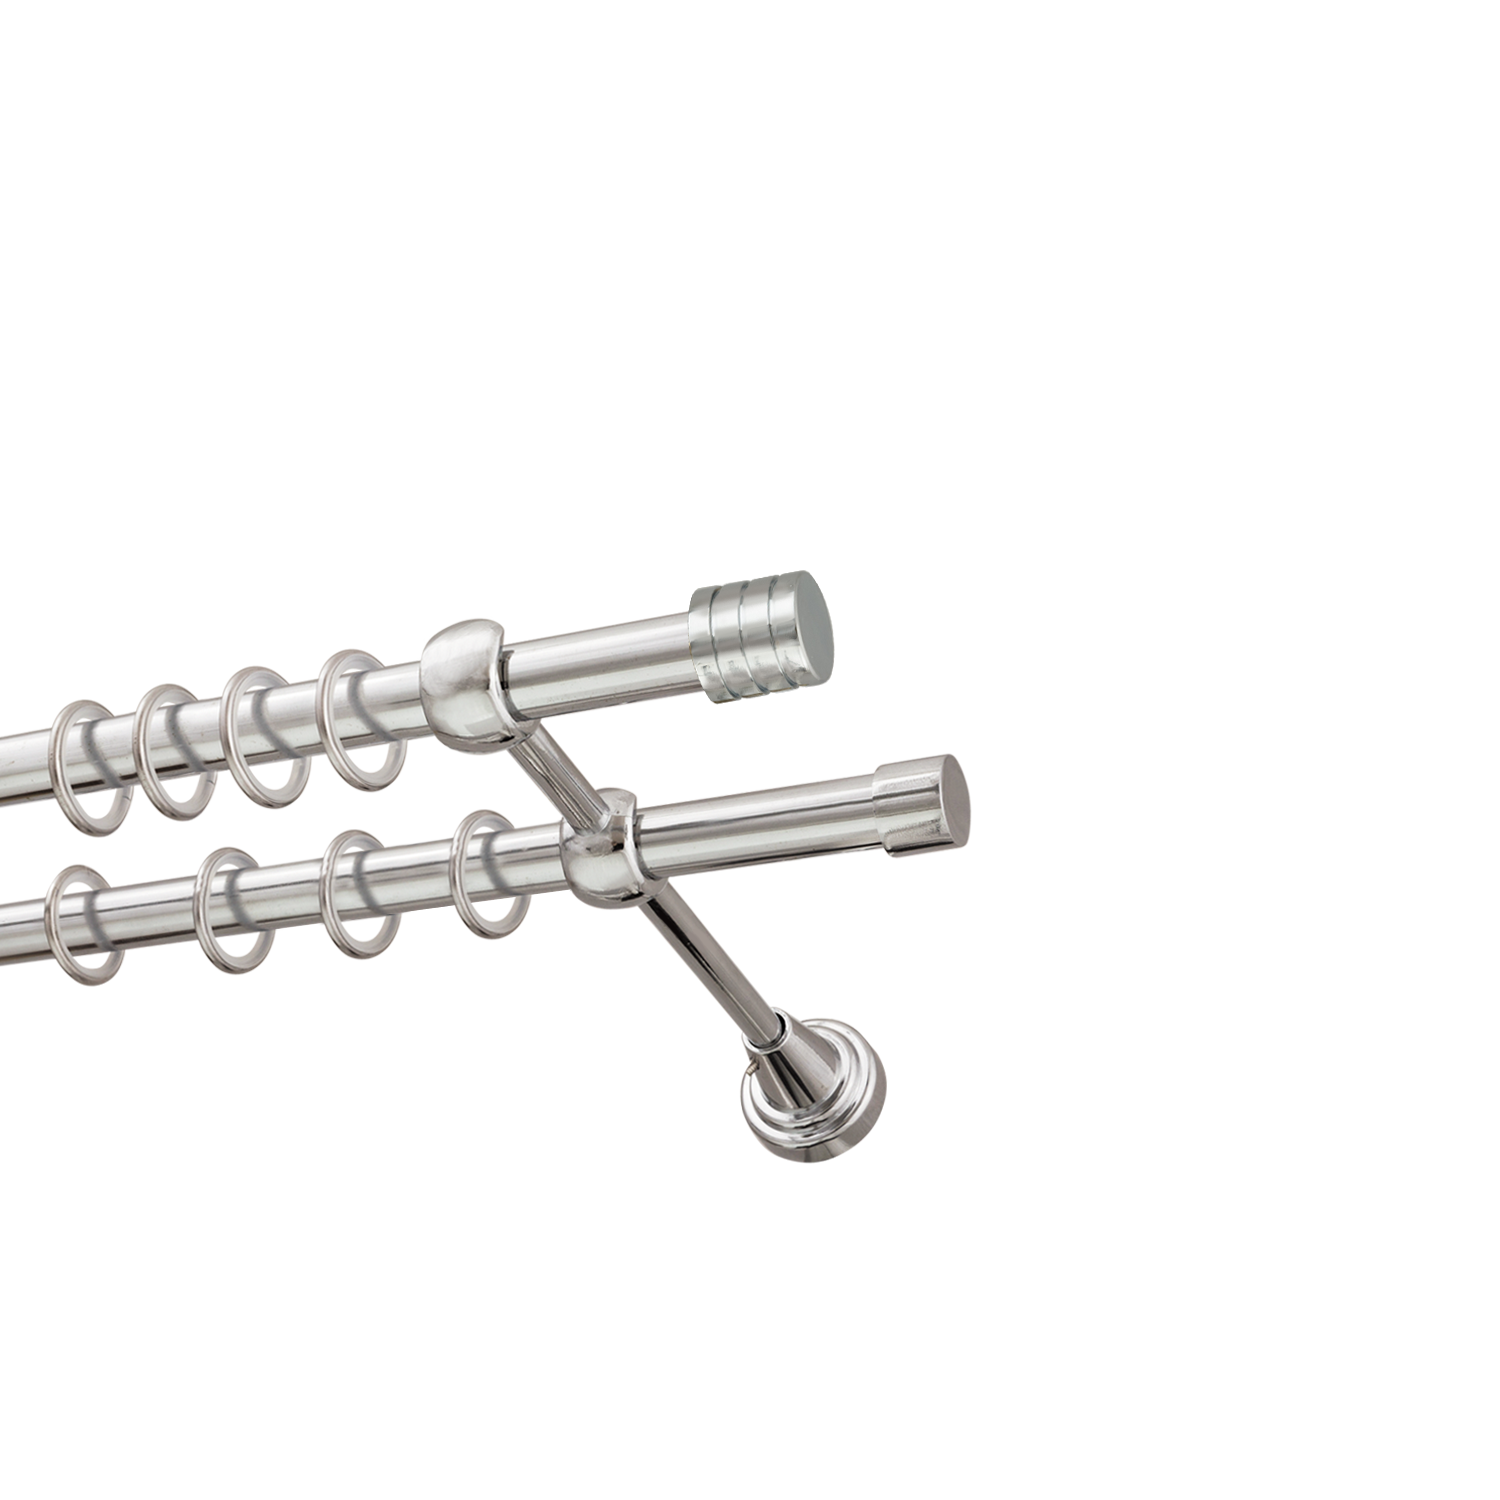 Металлический карниз для штор Подиум, двухрядный 16/16 мм, серебро, гладкая штанга, длина 140 см